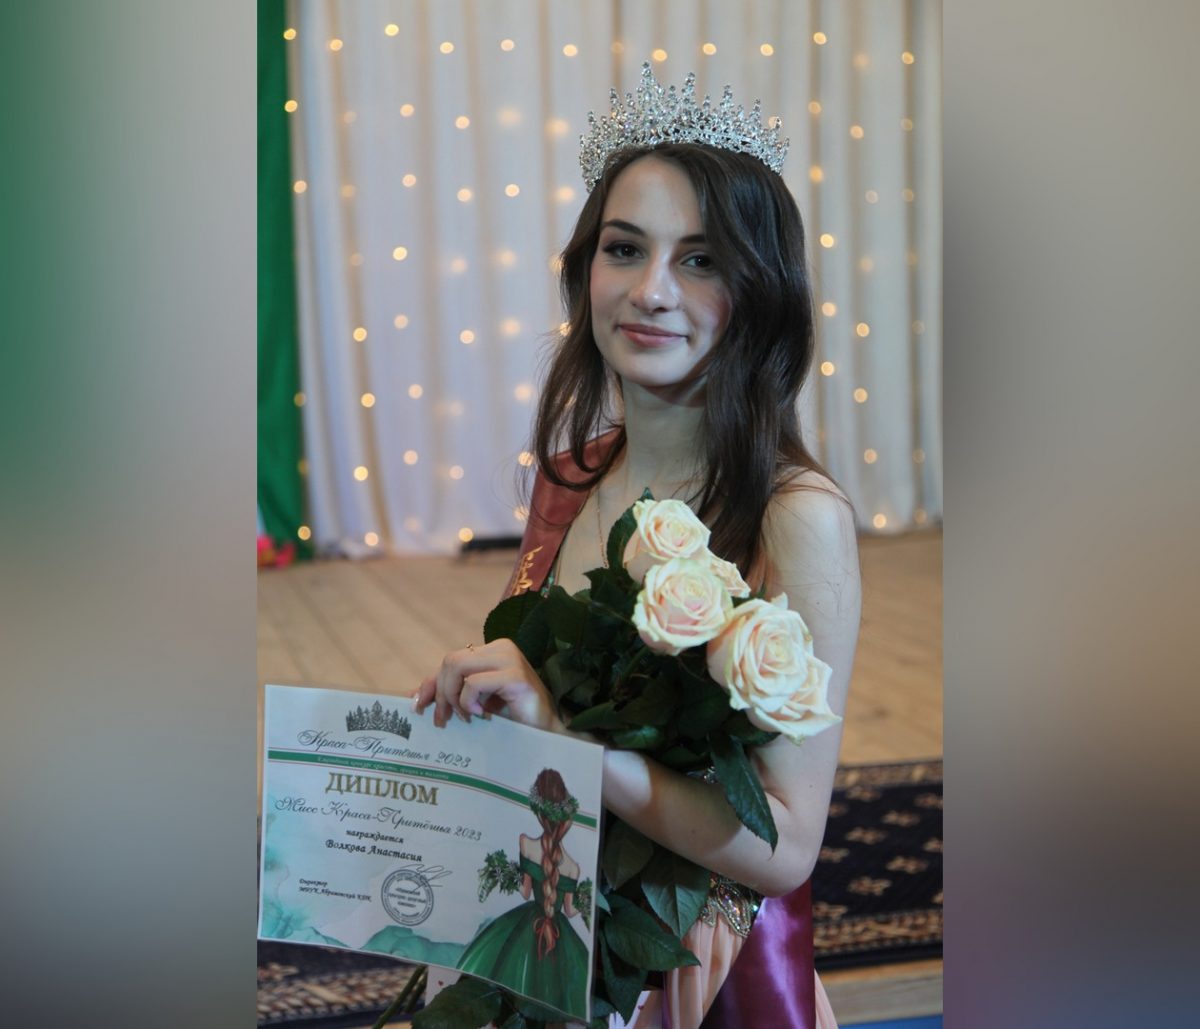 Анастасия Волкова из Водоватово получила титул самой красивой девушки Притешья